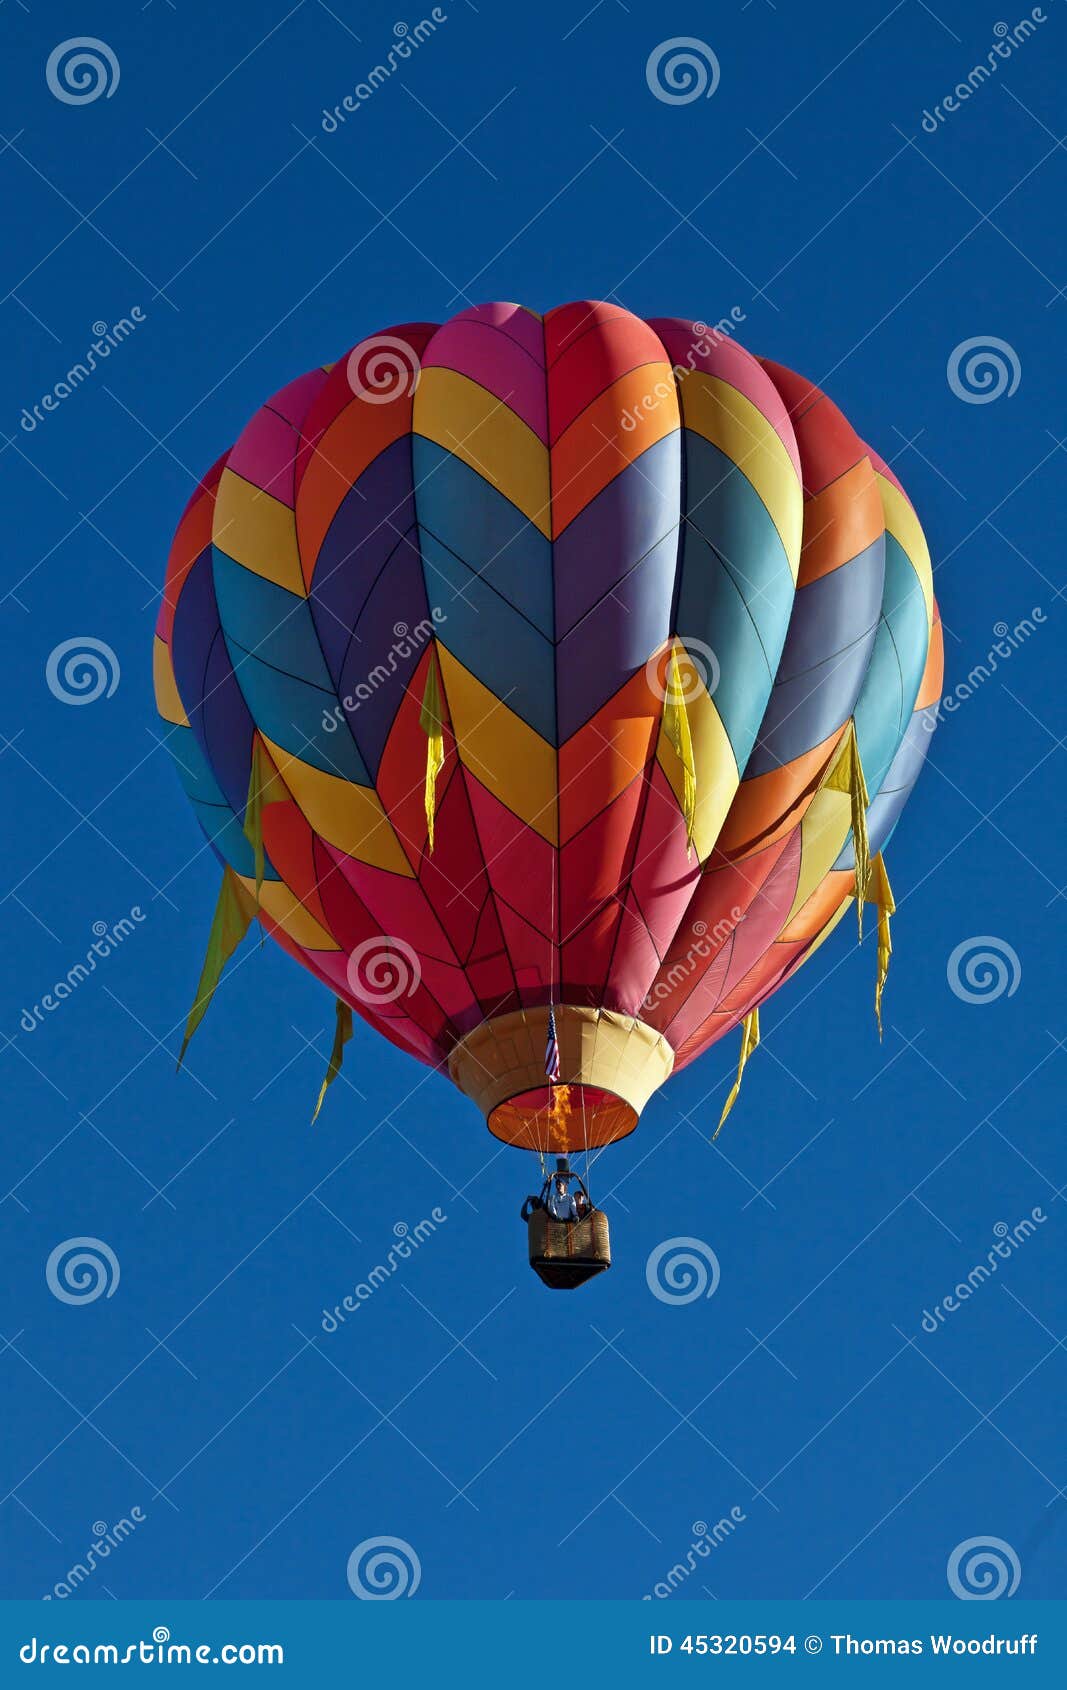 Cirkus för luftballongbealton som flyger den varma photgrphed showen va. För Oktober 4, 2014 för Albuquerque ballongfestival ballong för propp brand